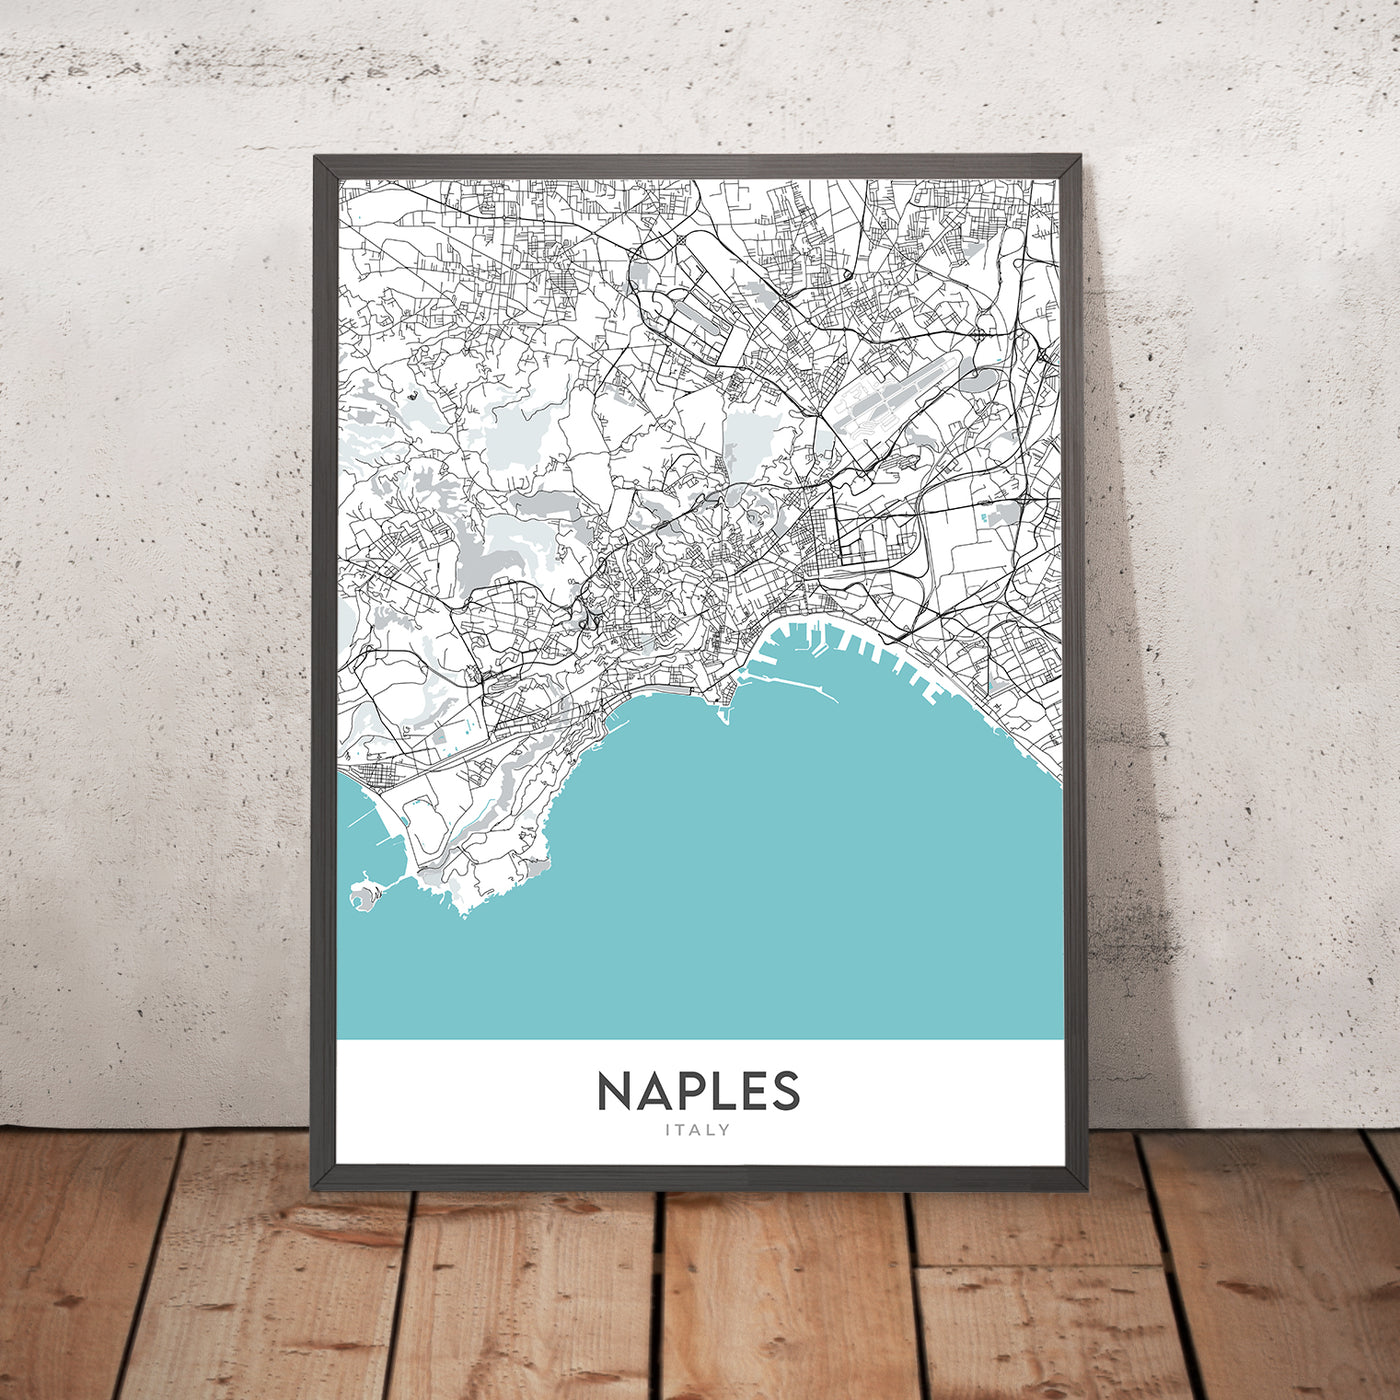 Mapa moderno de la ciudad de Nápoles, Italia: Chiaia, Castel Nuovo, Galleria Umberto I, Posillipo, Teatro San Carlo